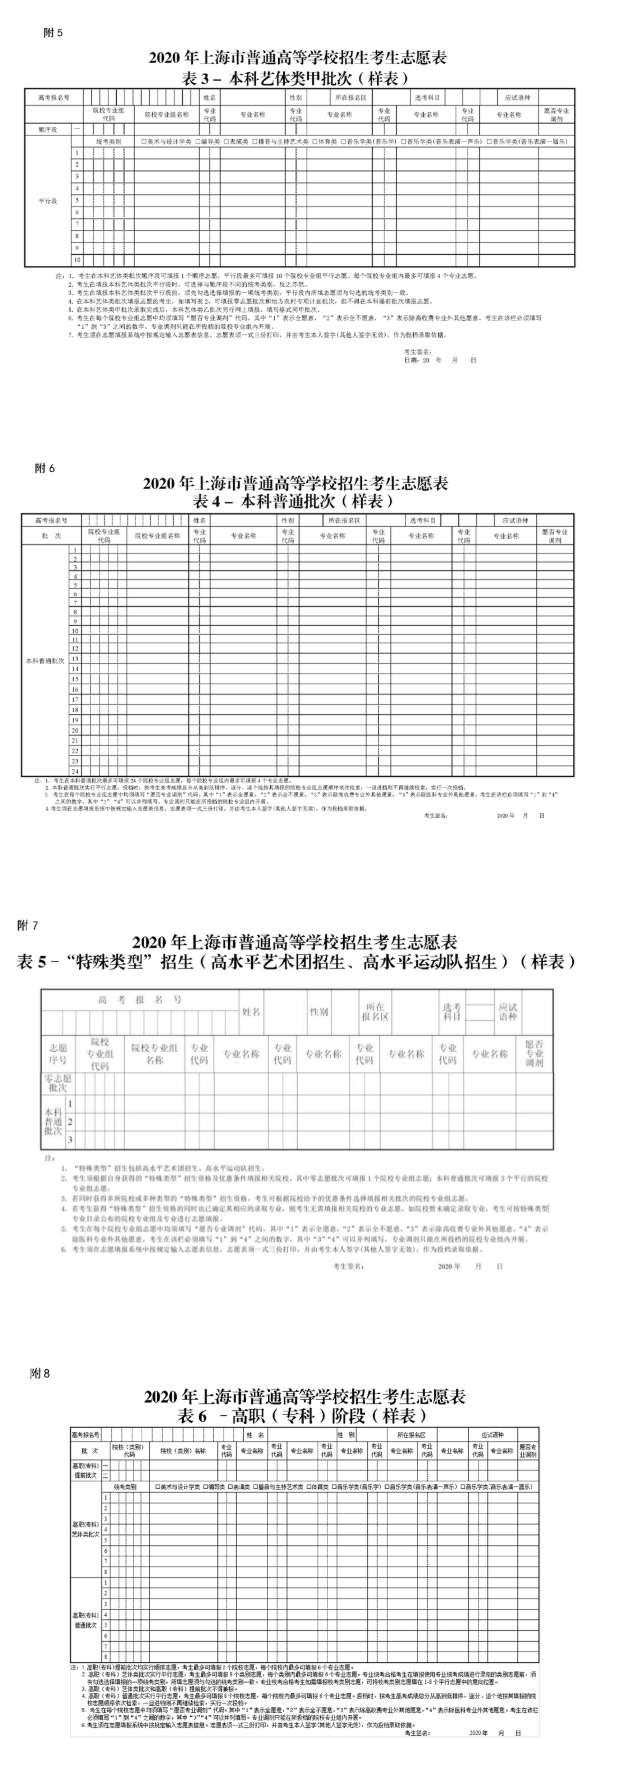 上海市教育考试院关于印发《上海市2020年普通高等学校招生志愿填报与投档录取实施